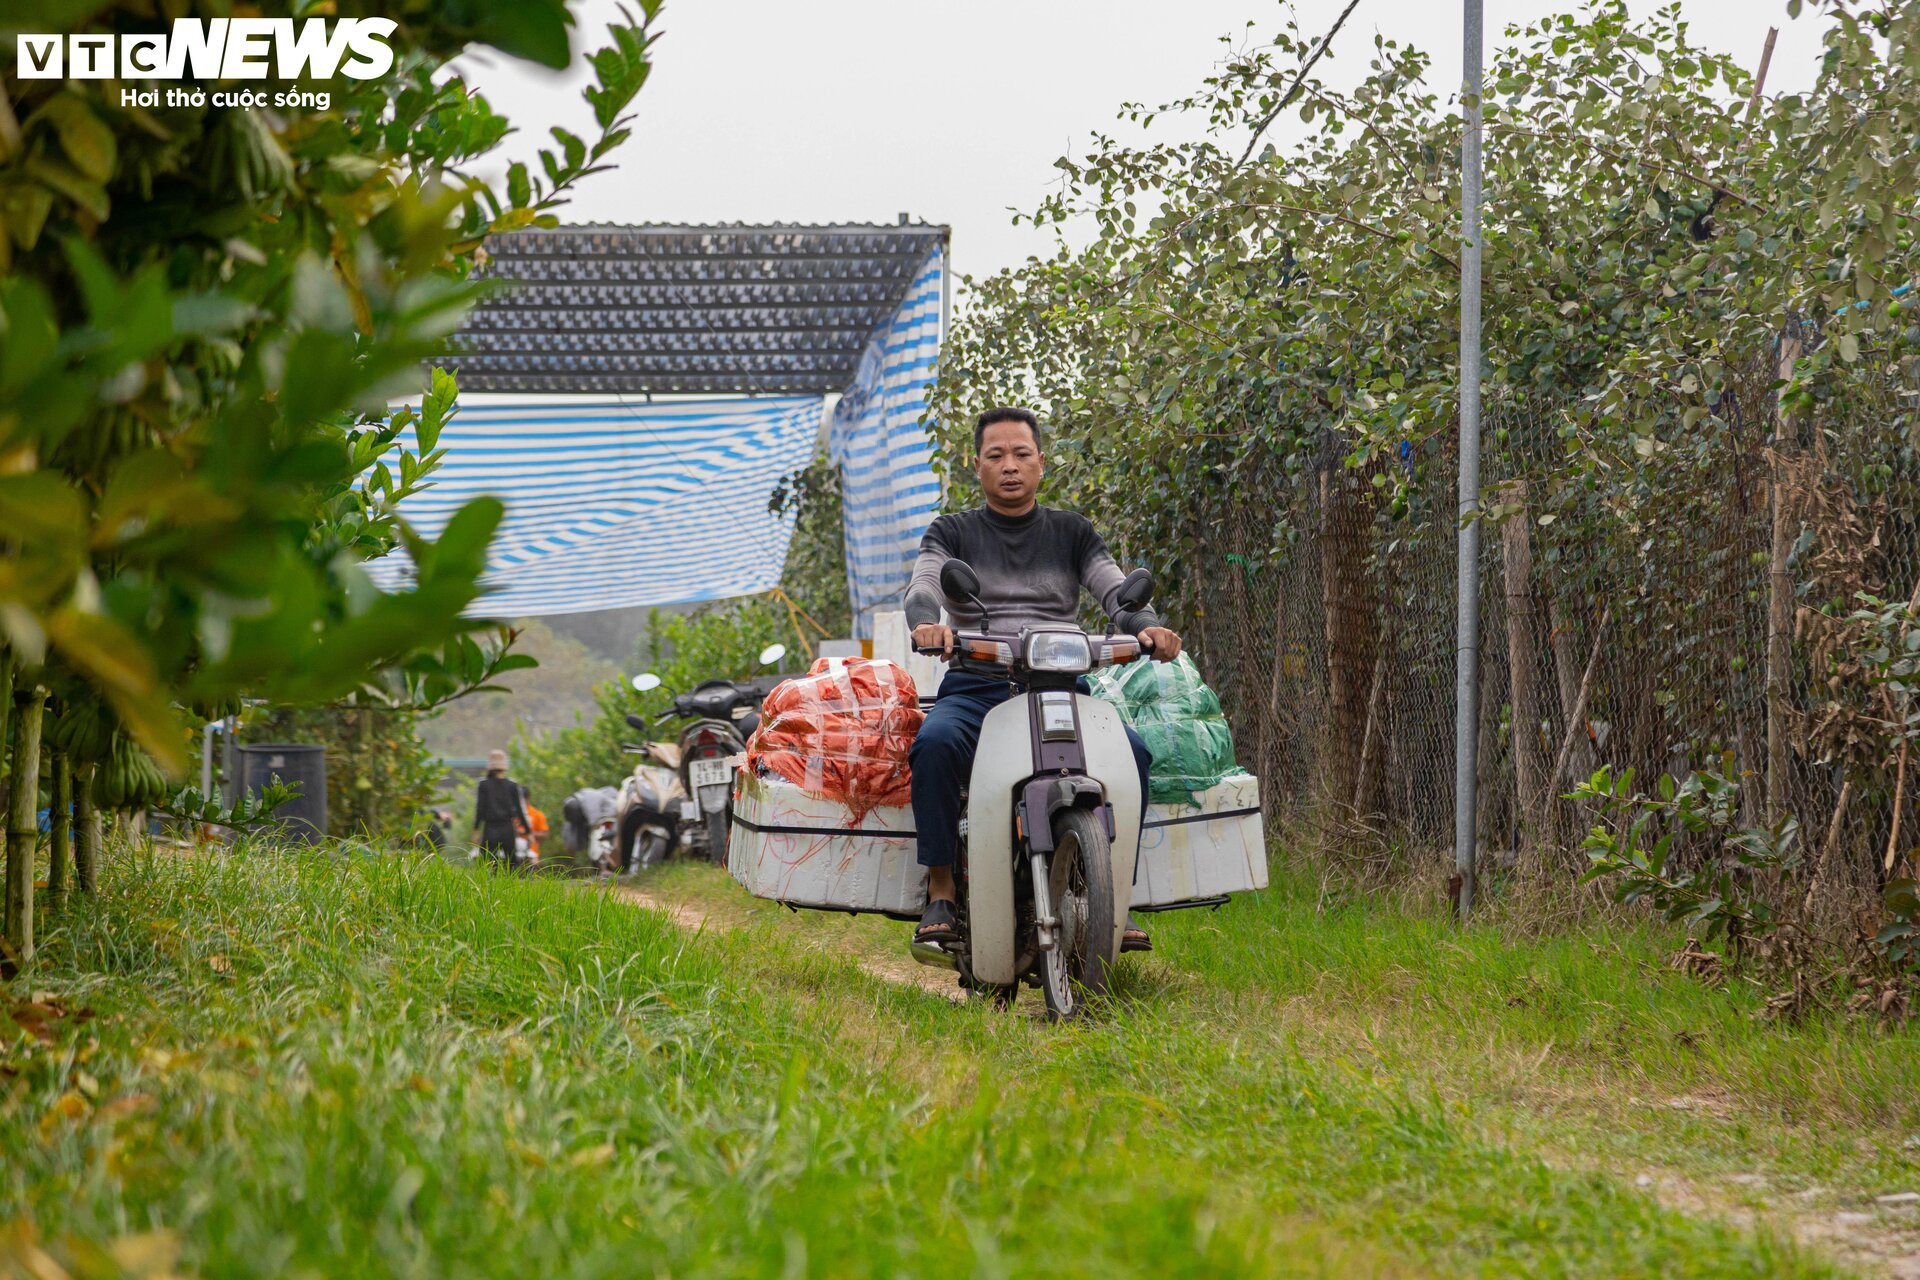 Tất bật thu hoạch, người dân trồng phật thủ ở Hà Nội bội thu - Ảnh 15.